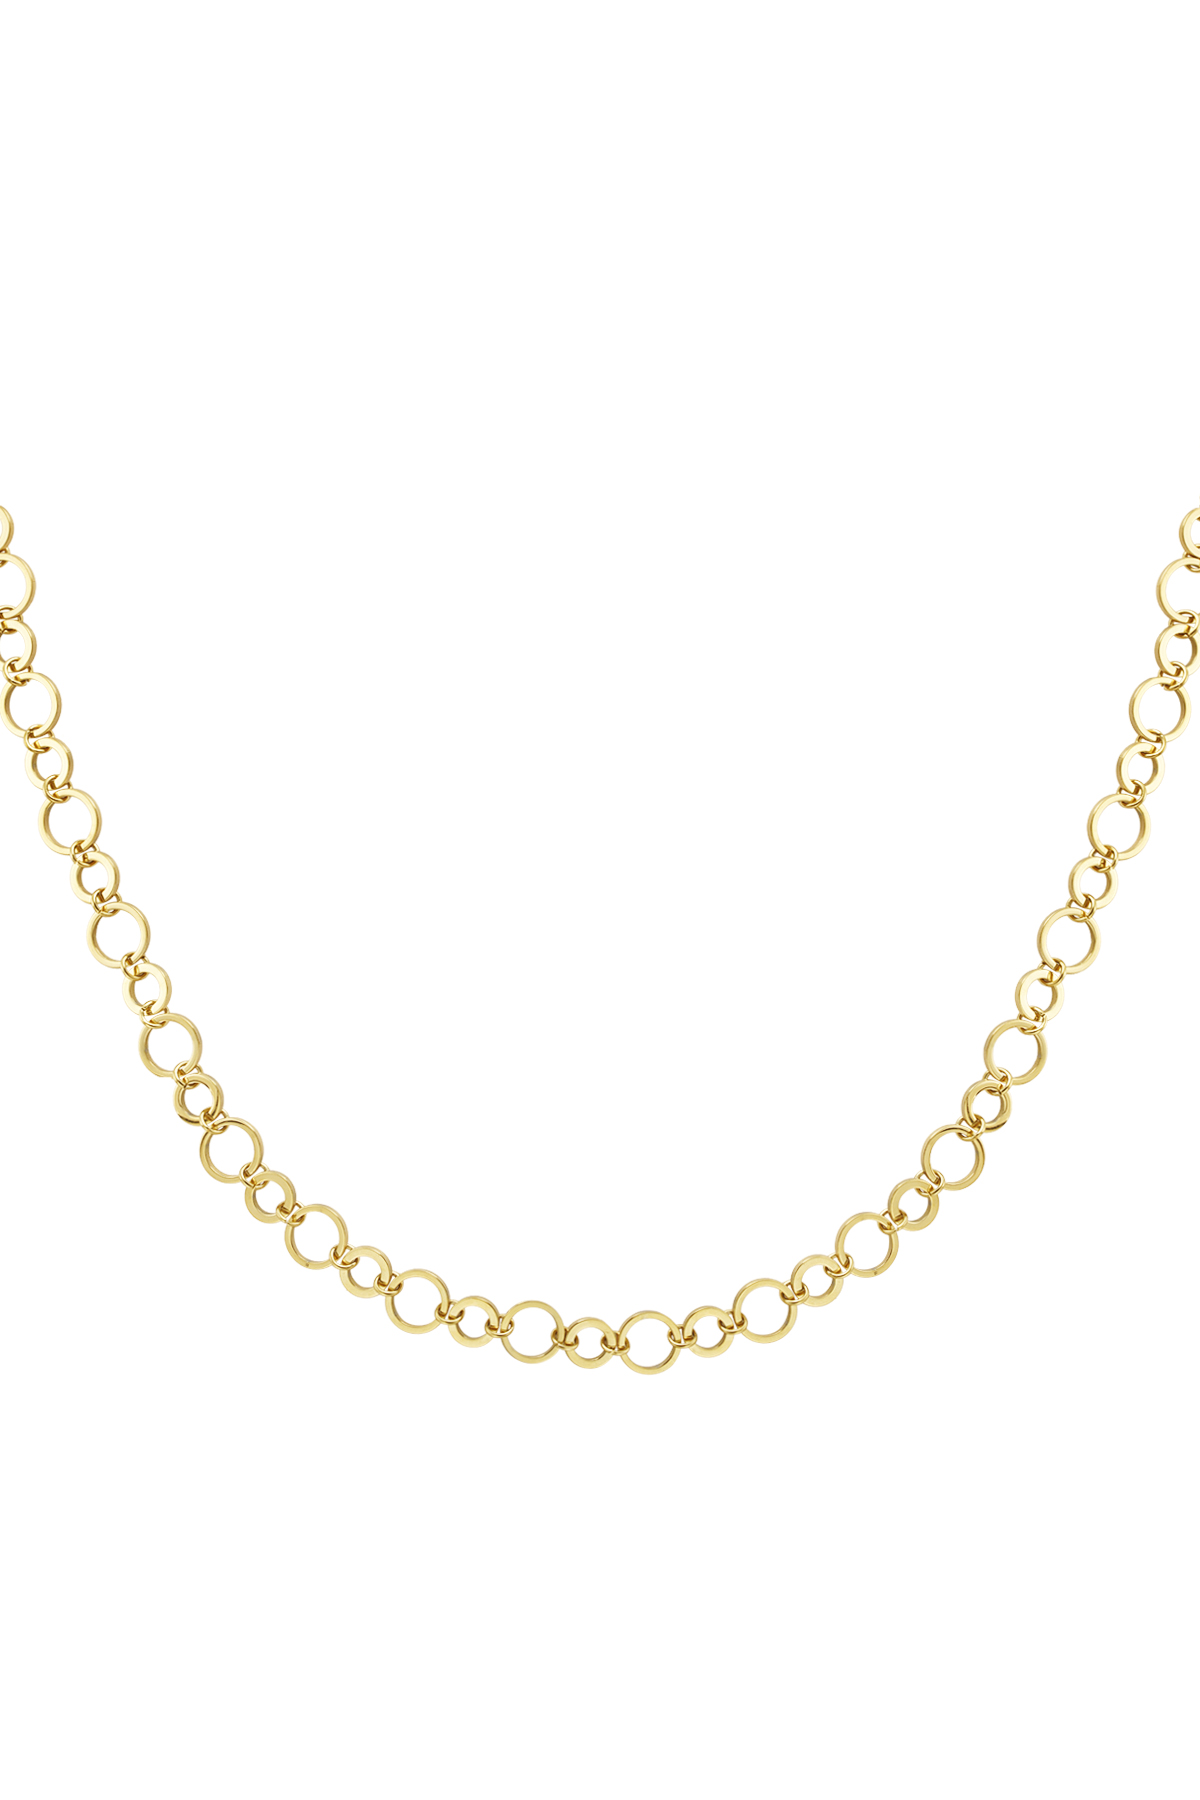 Halskette mit kleinen und großen runden Gliedern – Gold